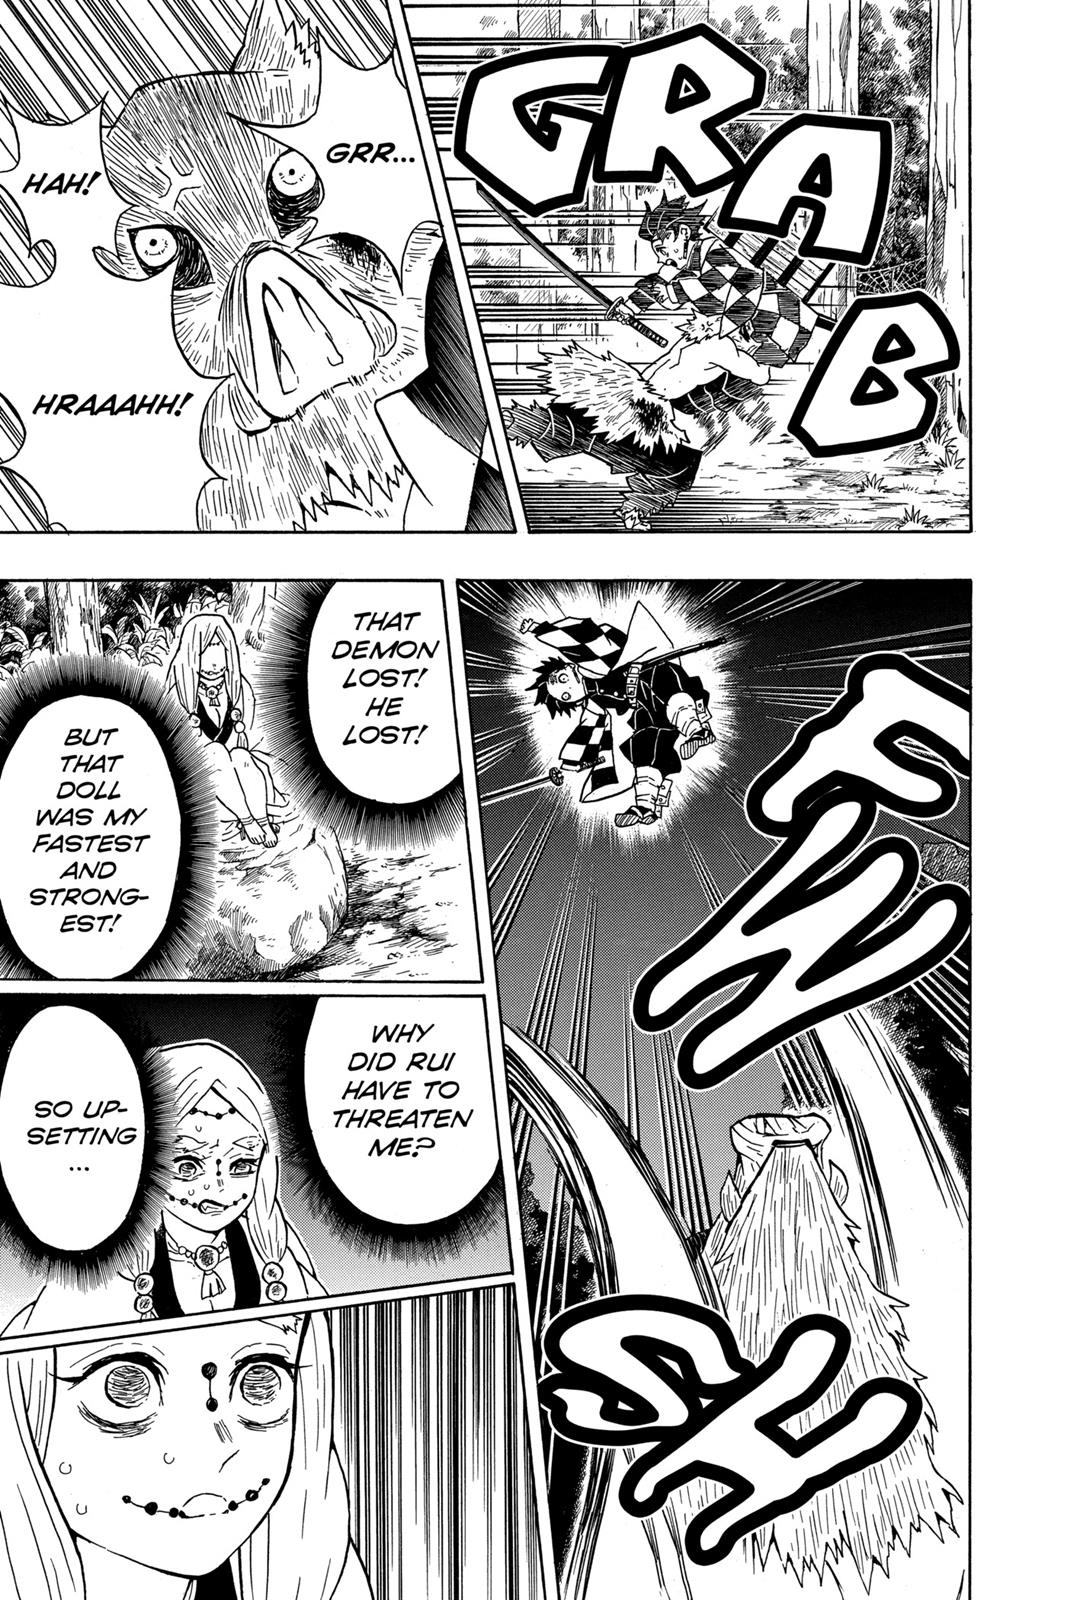 Demon Slayer Manga Manga Chapter - 31 - image 8